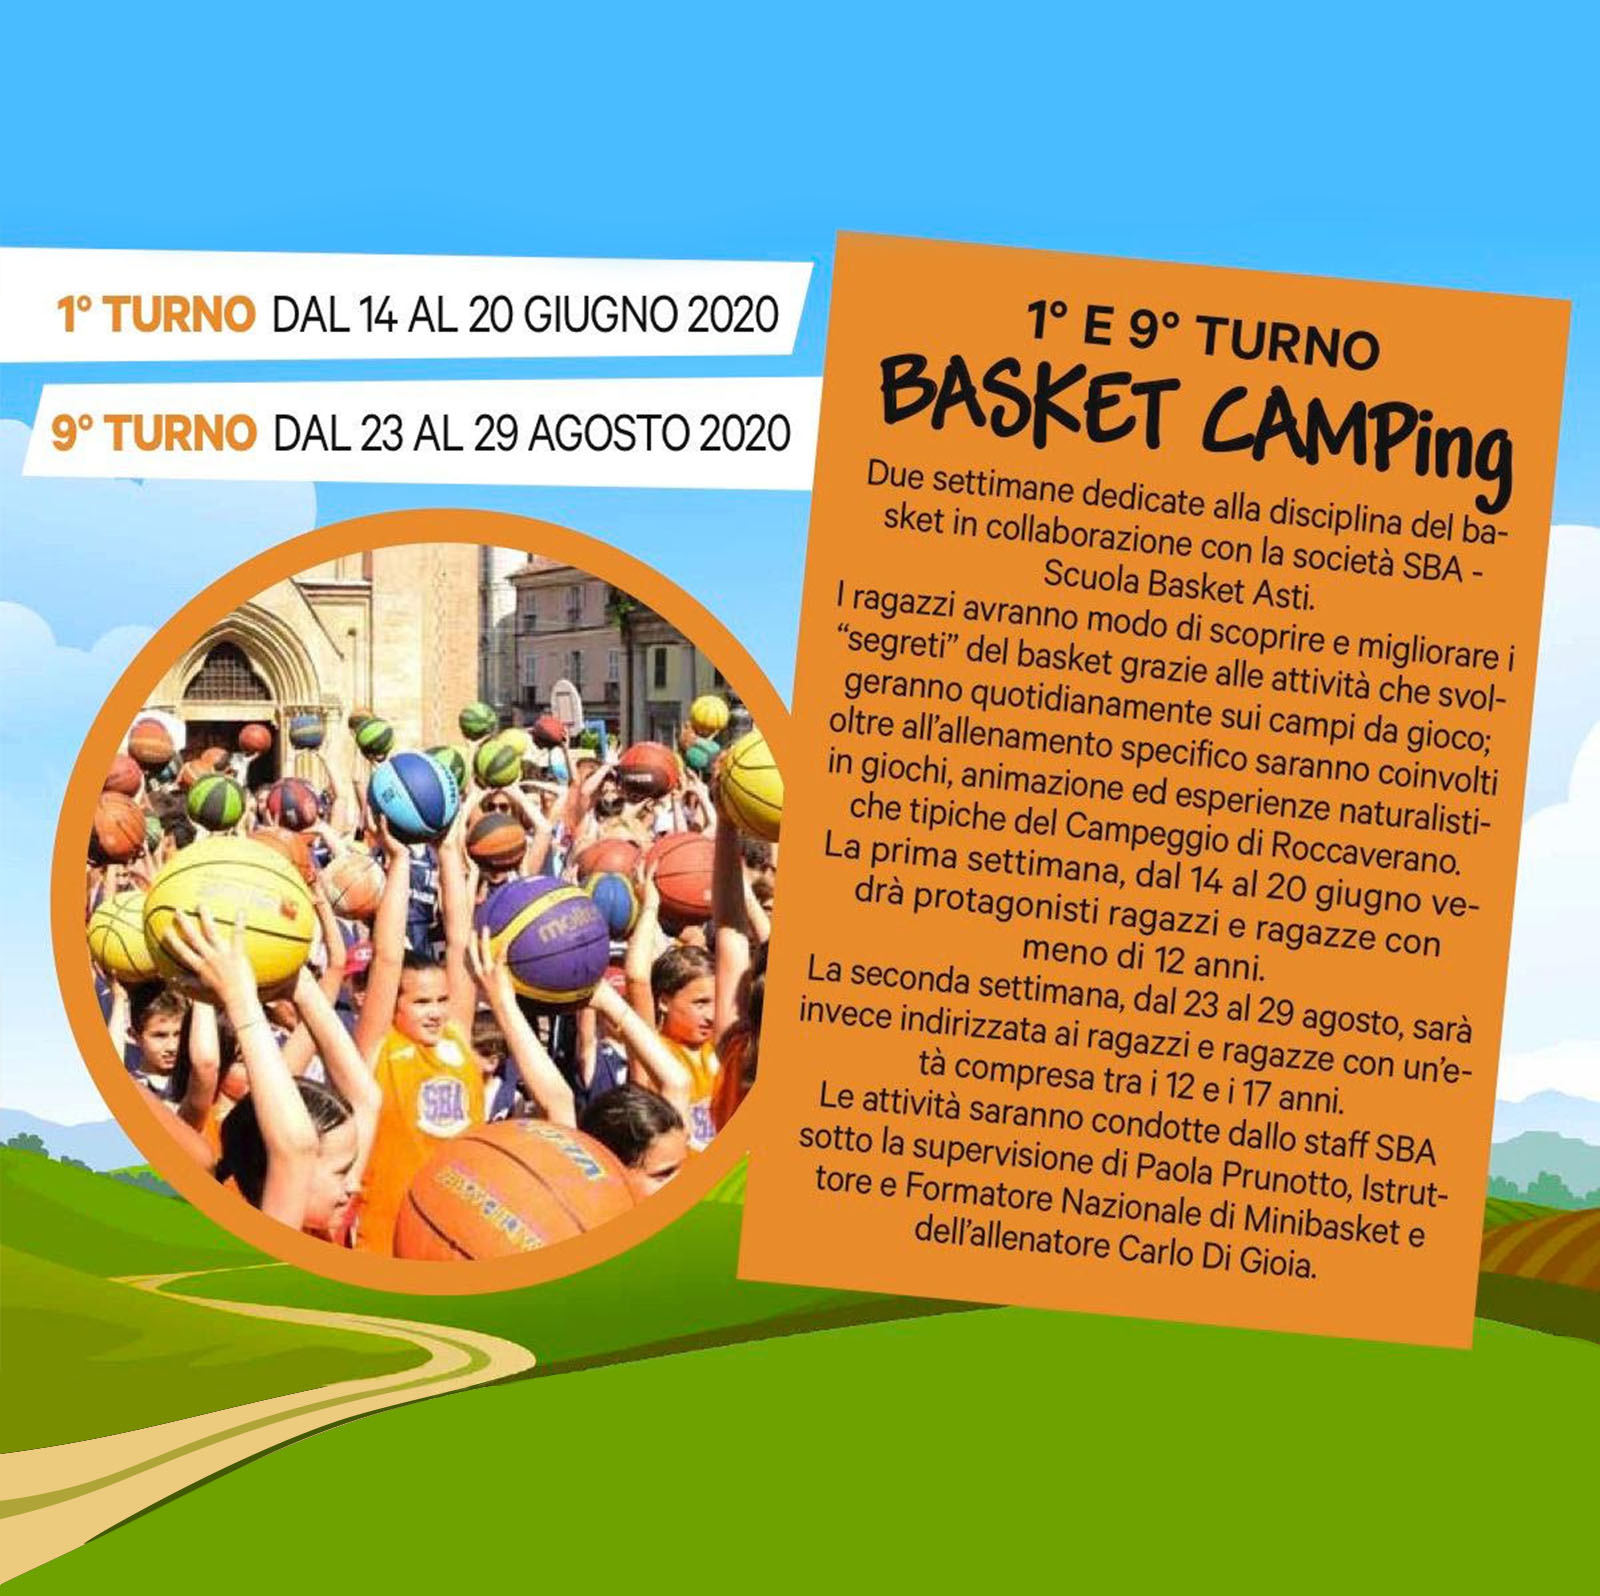 Camp Roccaverano Minibasket